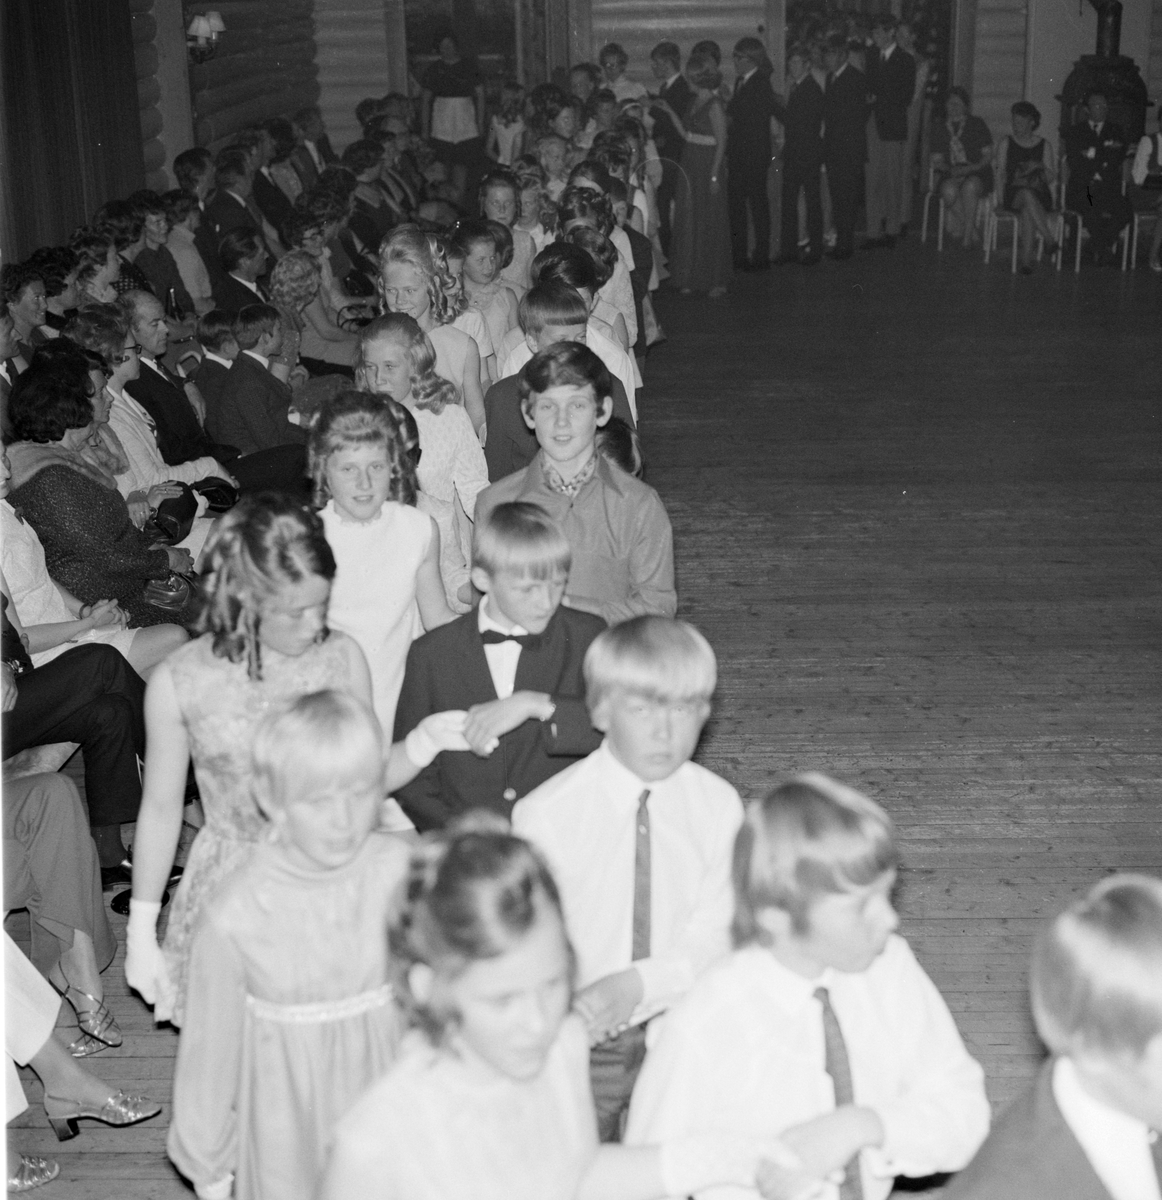 Danseskolen på Veldrom, Veldre, Byflaten. Dans, ball, barn. 